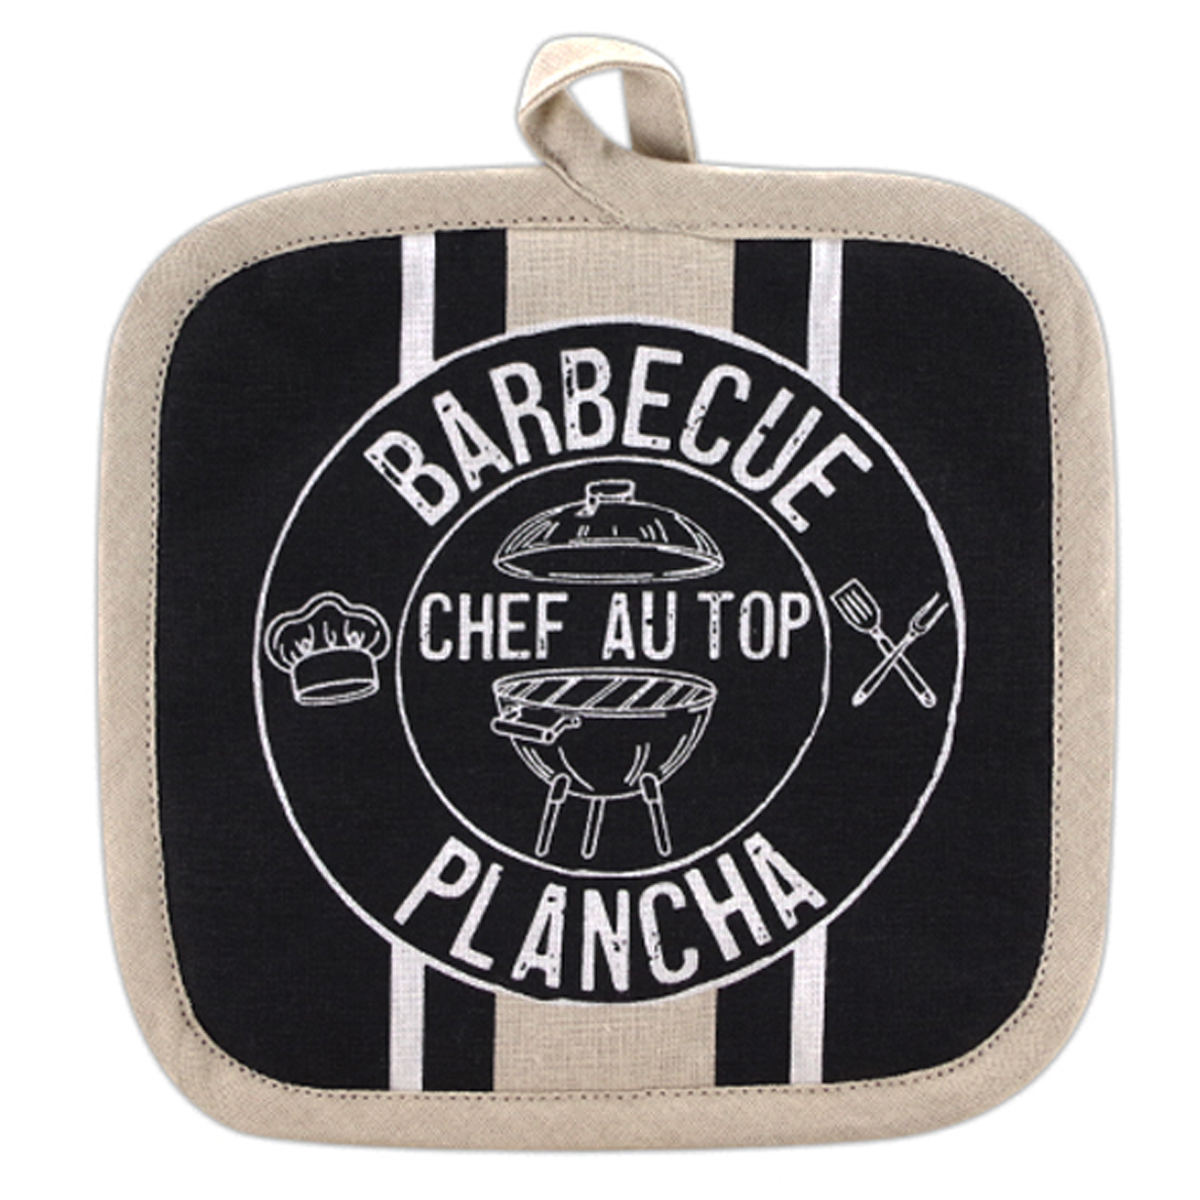 Manique coton \'Barbecue Plancha\' noir beige (chef au top) - 20x20 cm - [R6599]